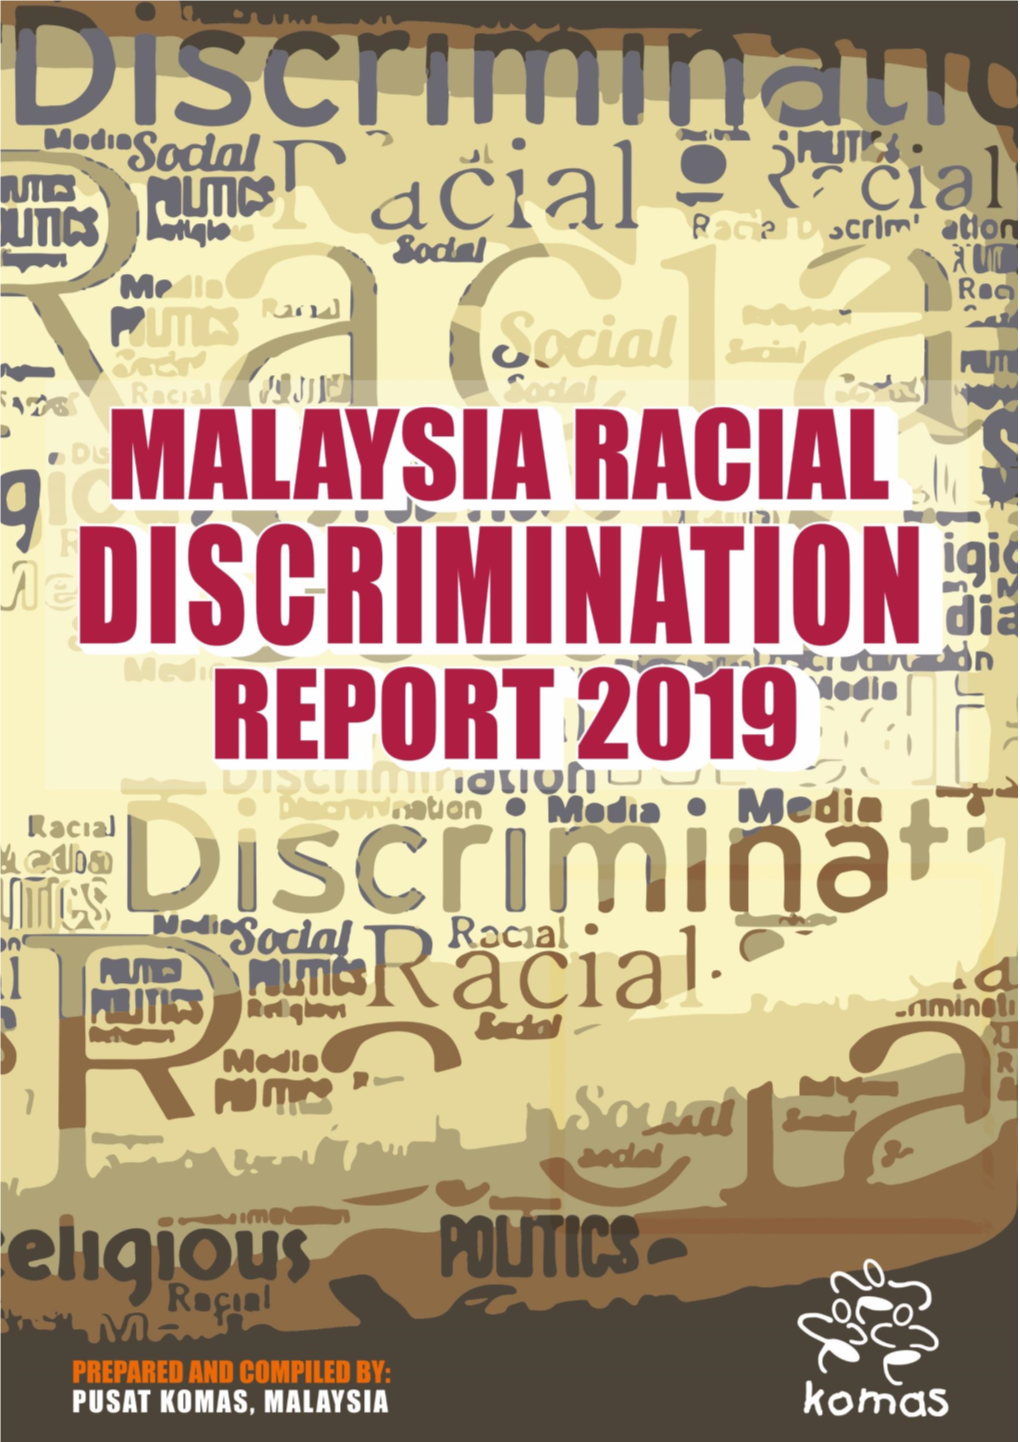 LAPORAN DISUSUN DAN DISEDIAKAN OLEH: PUSAT KOMAS NON-DISCRIMINATION PROGRAMME Malaysia